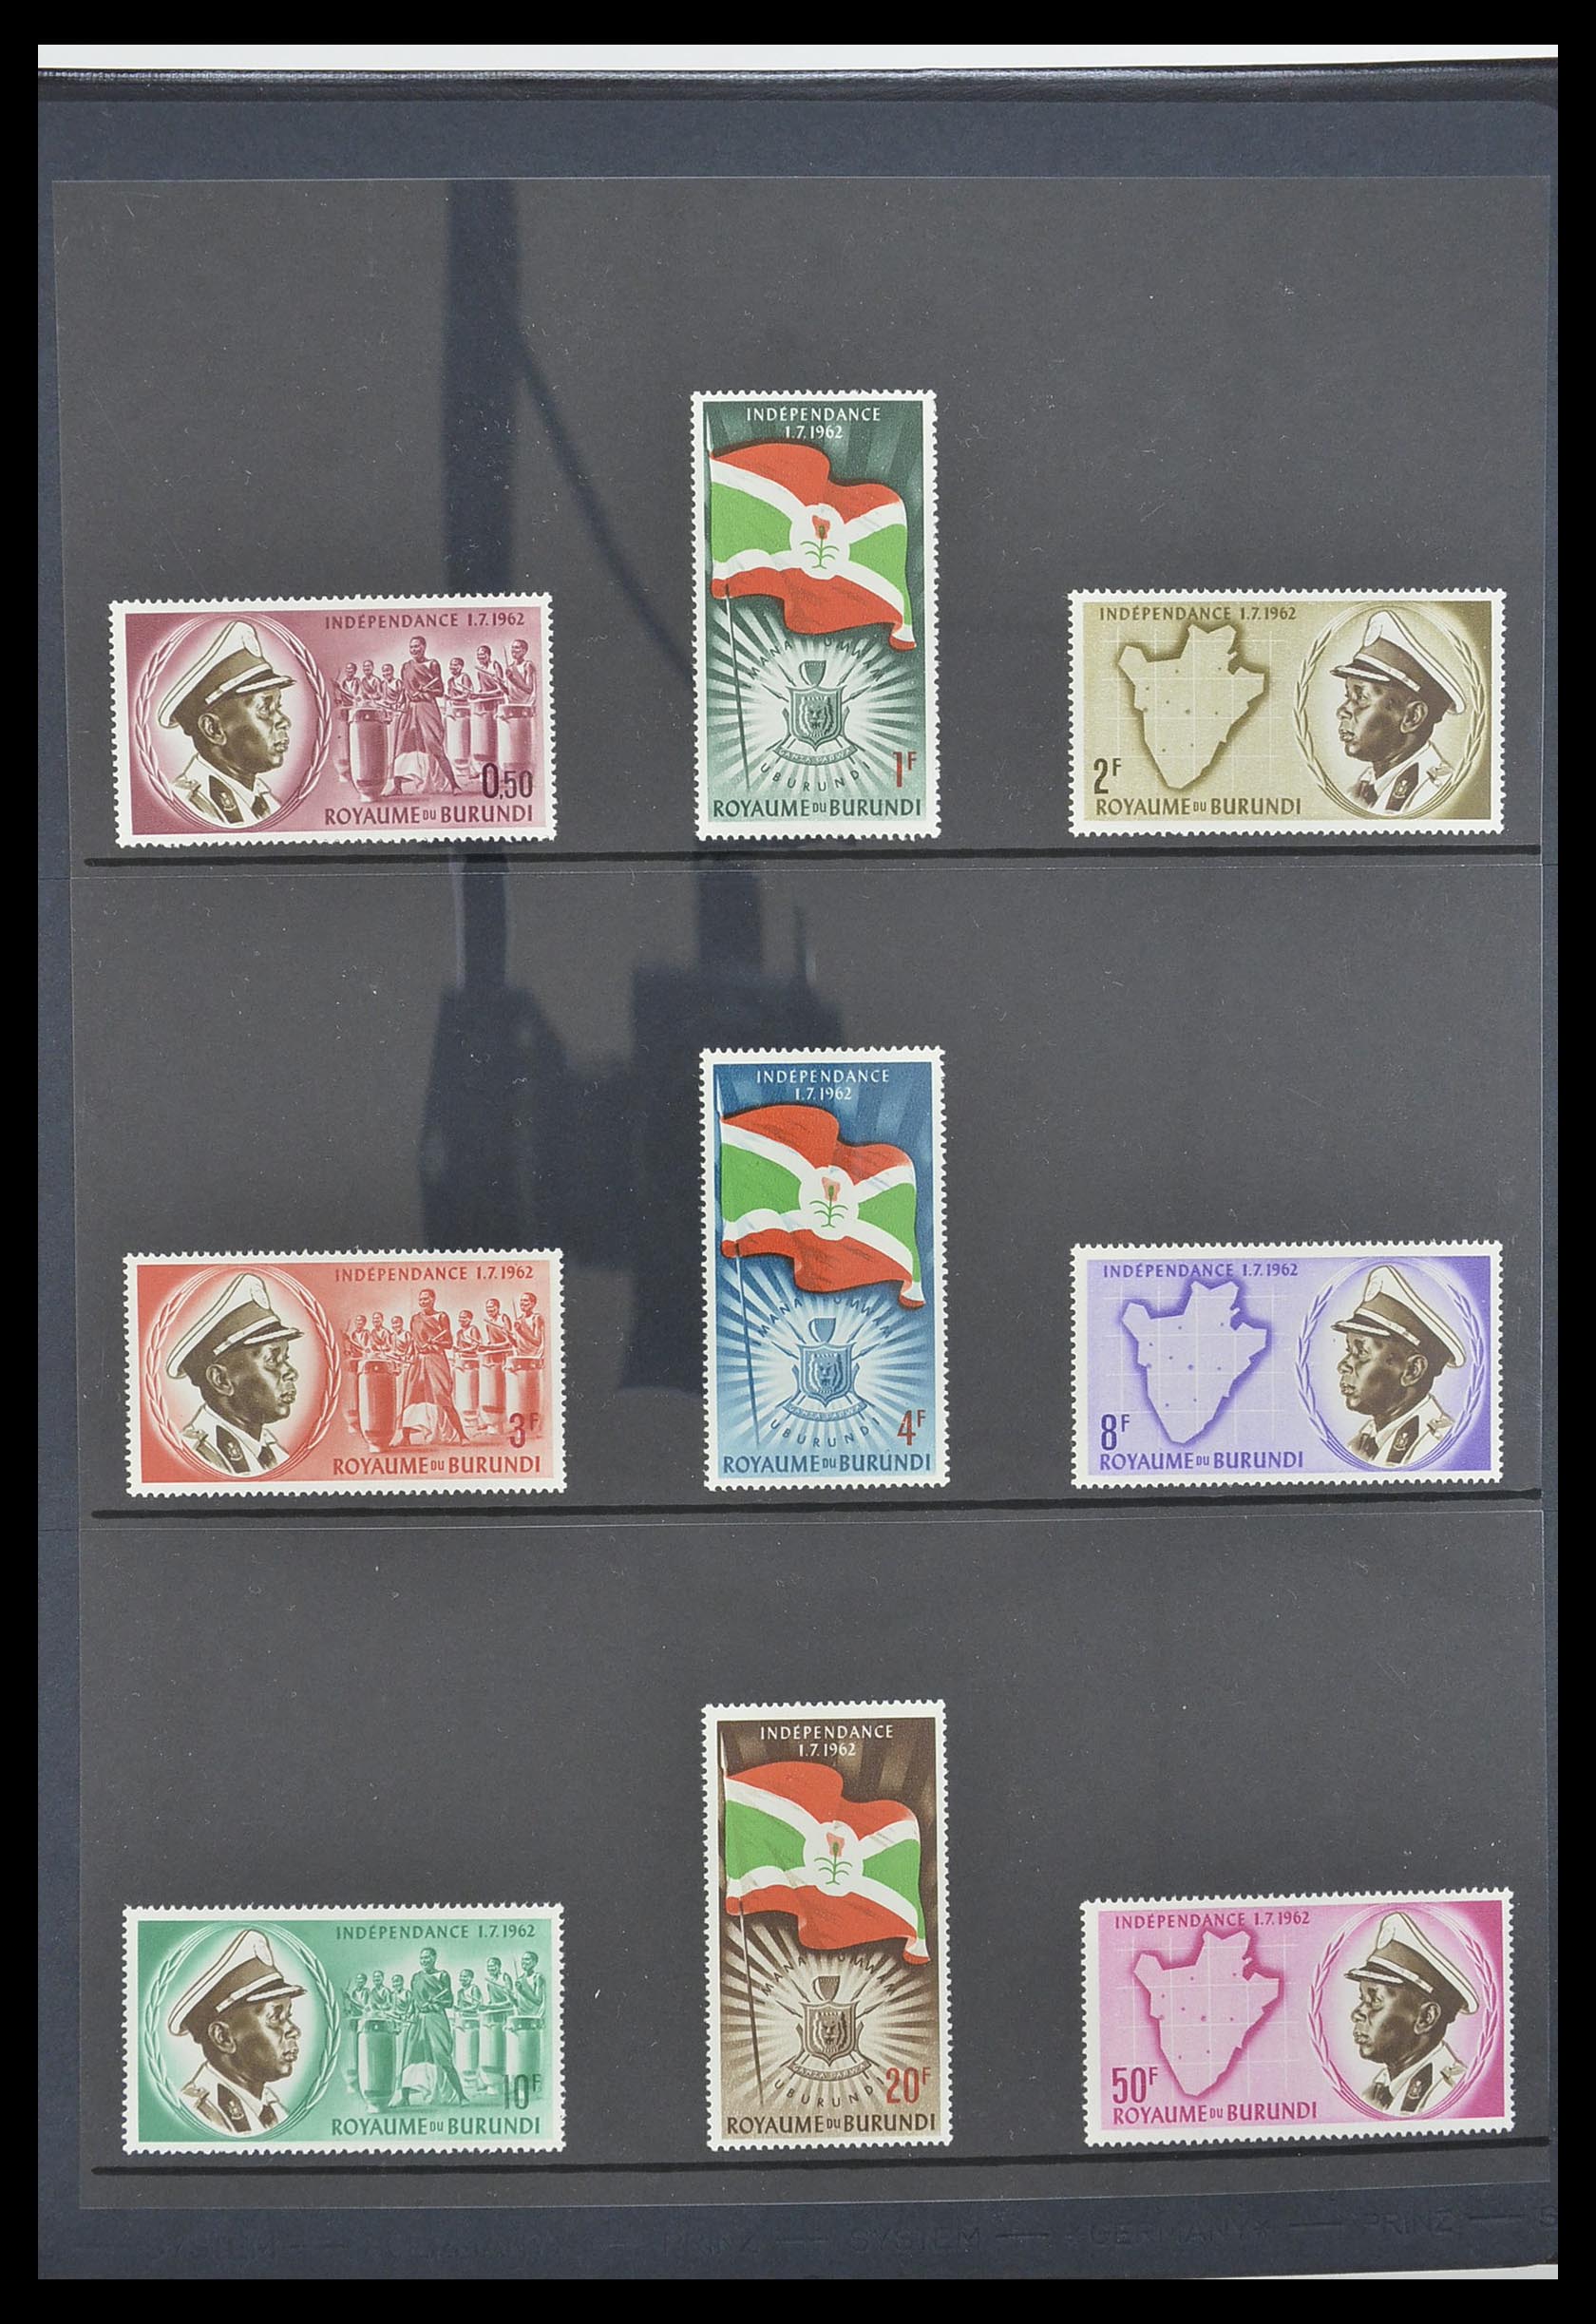 33764 003 - Stamp collection 33764 Burundi 1962-2004.